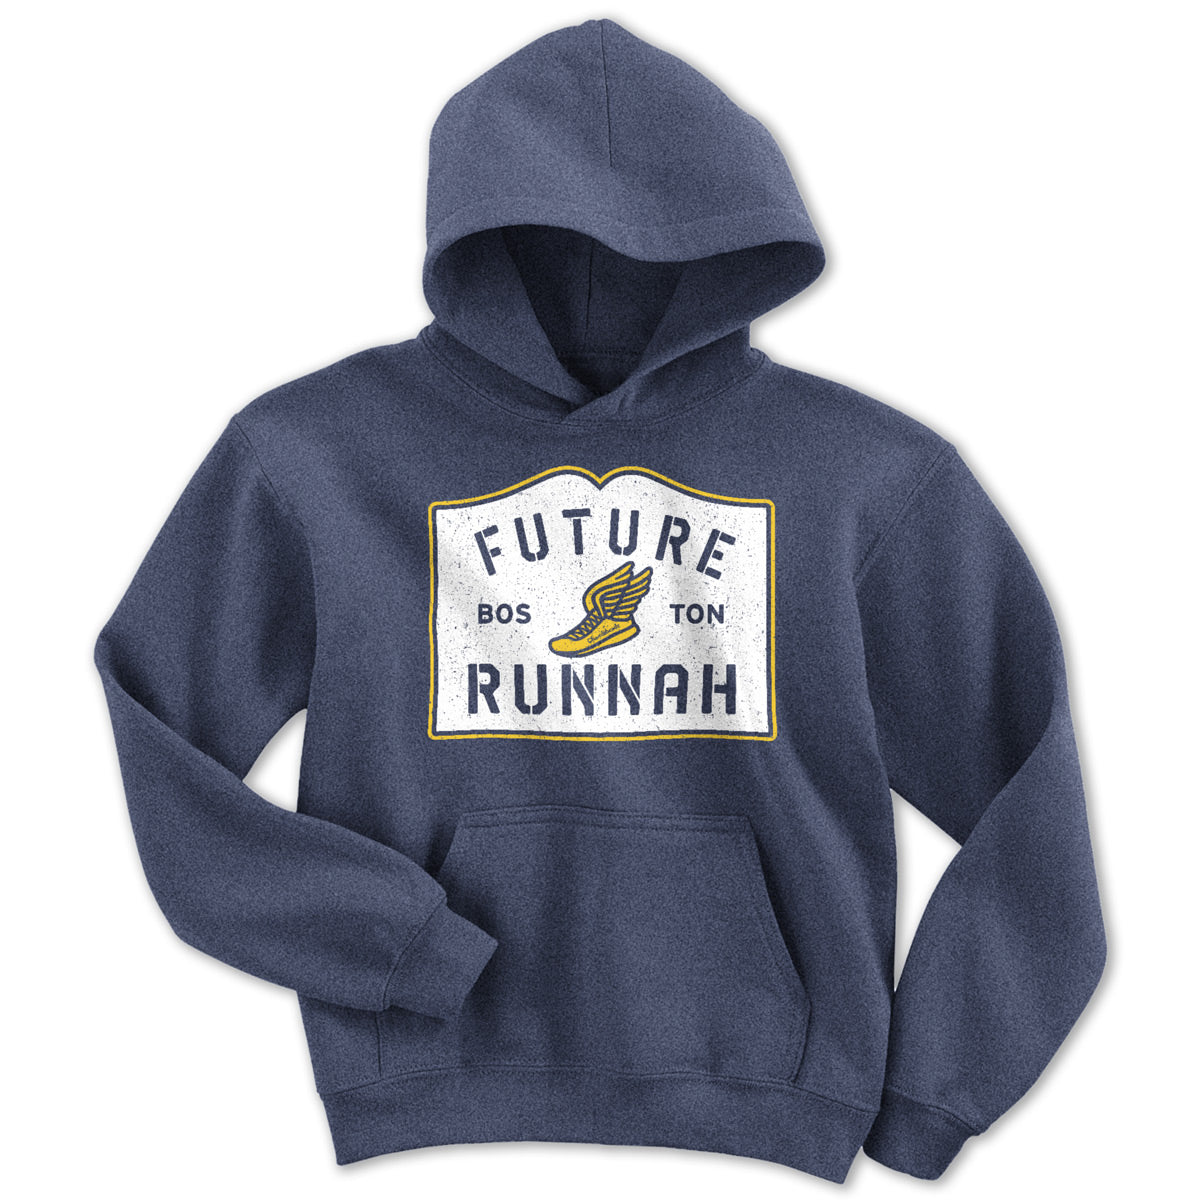 Future Runnah Boston Youth Hoodie - Chowdaheadz